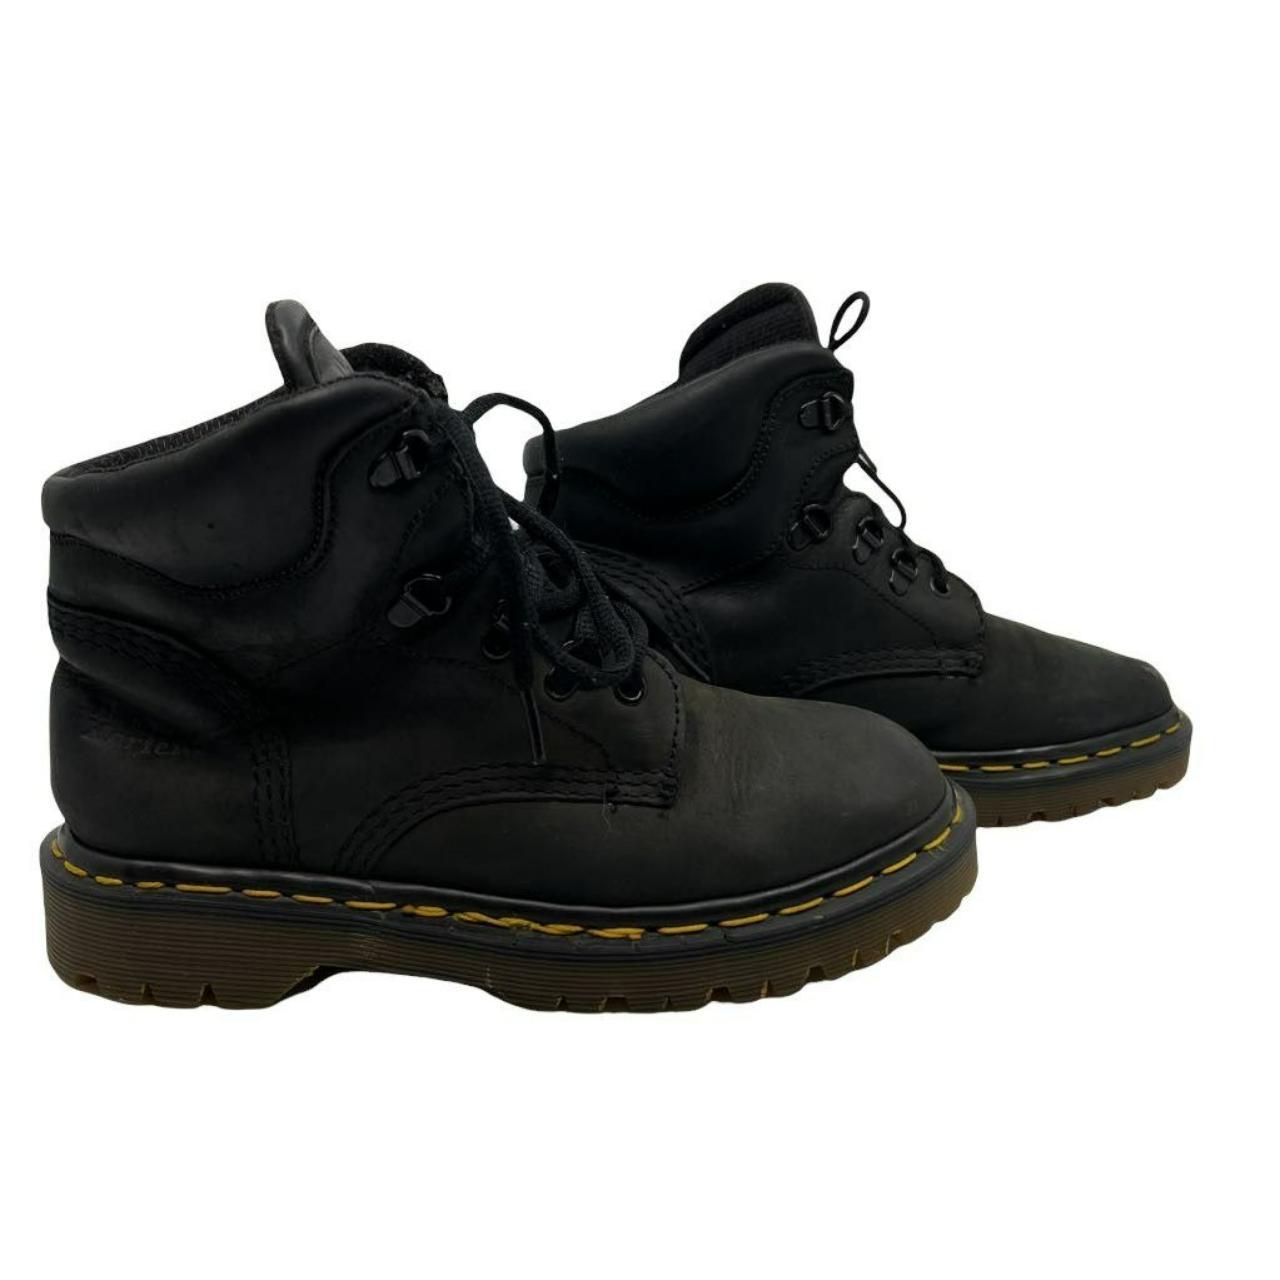 Dr. Martens Mens Ankle Work Safety Boots Black... - Depop